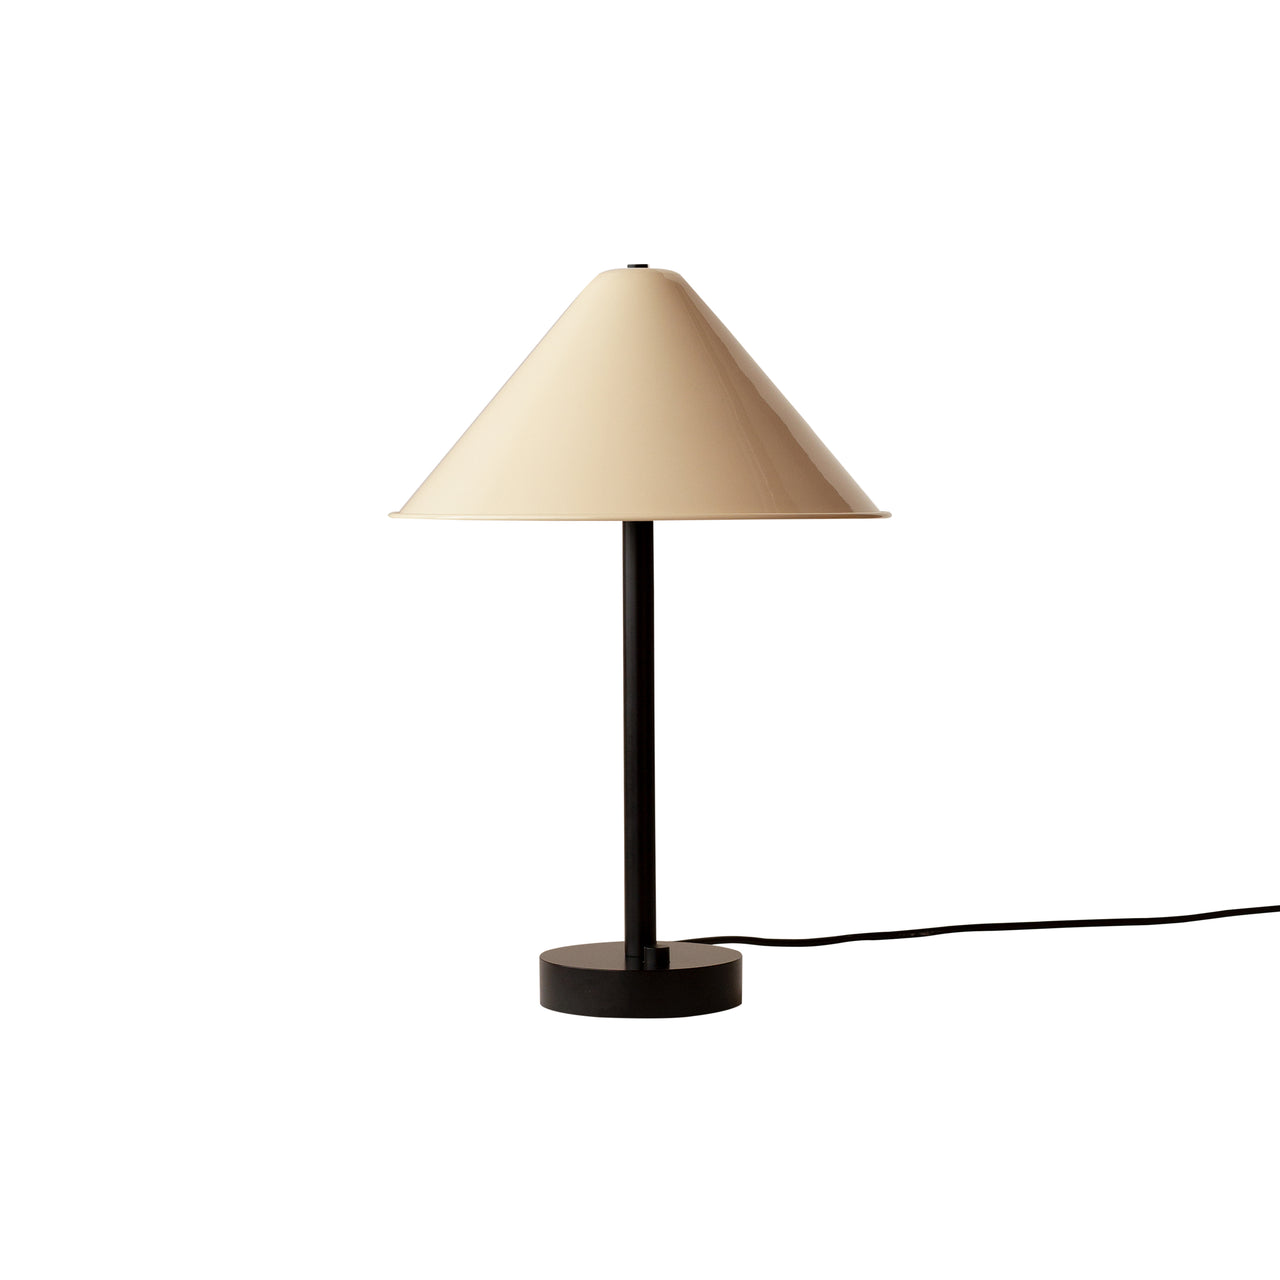 Tipi Table Lamp: Bone + Black